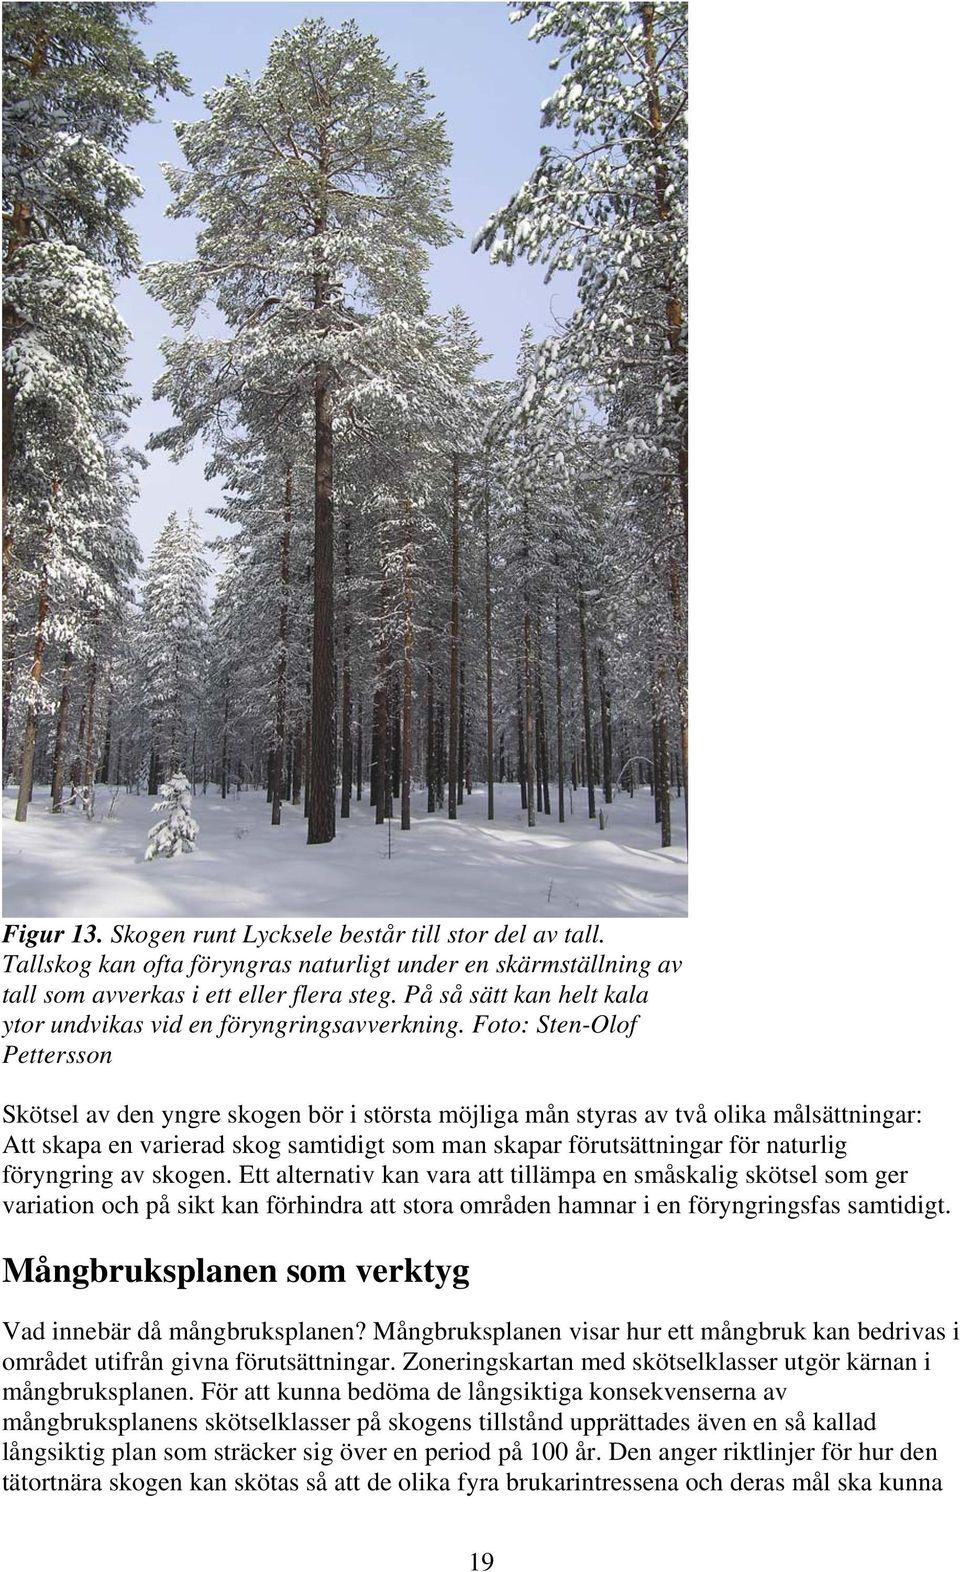 Foto: Sten-Olof Pettersson Skötsel av den yngre skogen bör i största möjliga mån styras av två olika målsättningar: Att skapa en varierad skog samtidigt som man skapar förutsättningar för naturlig